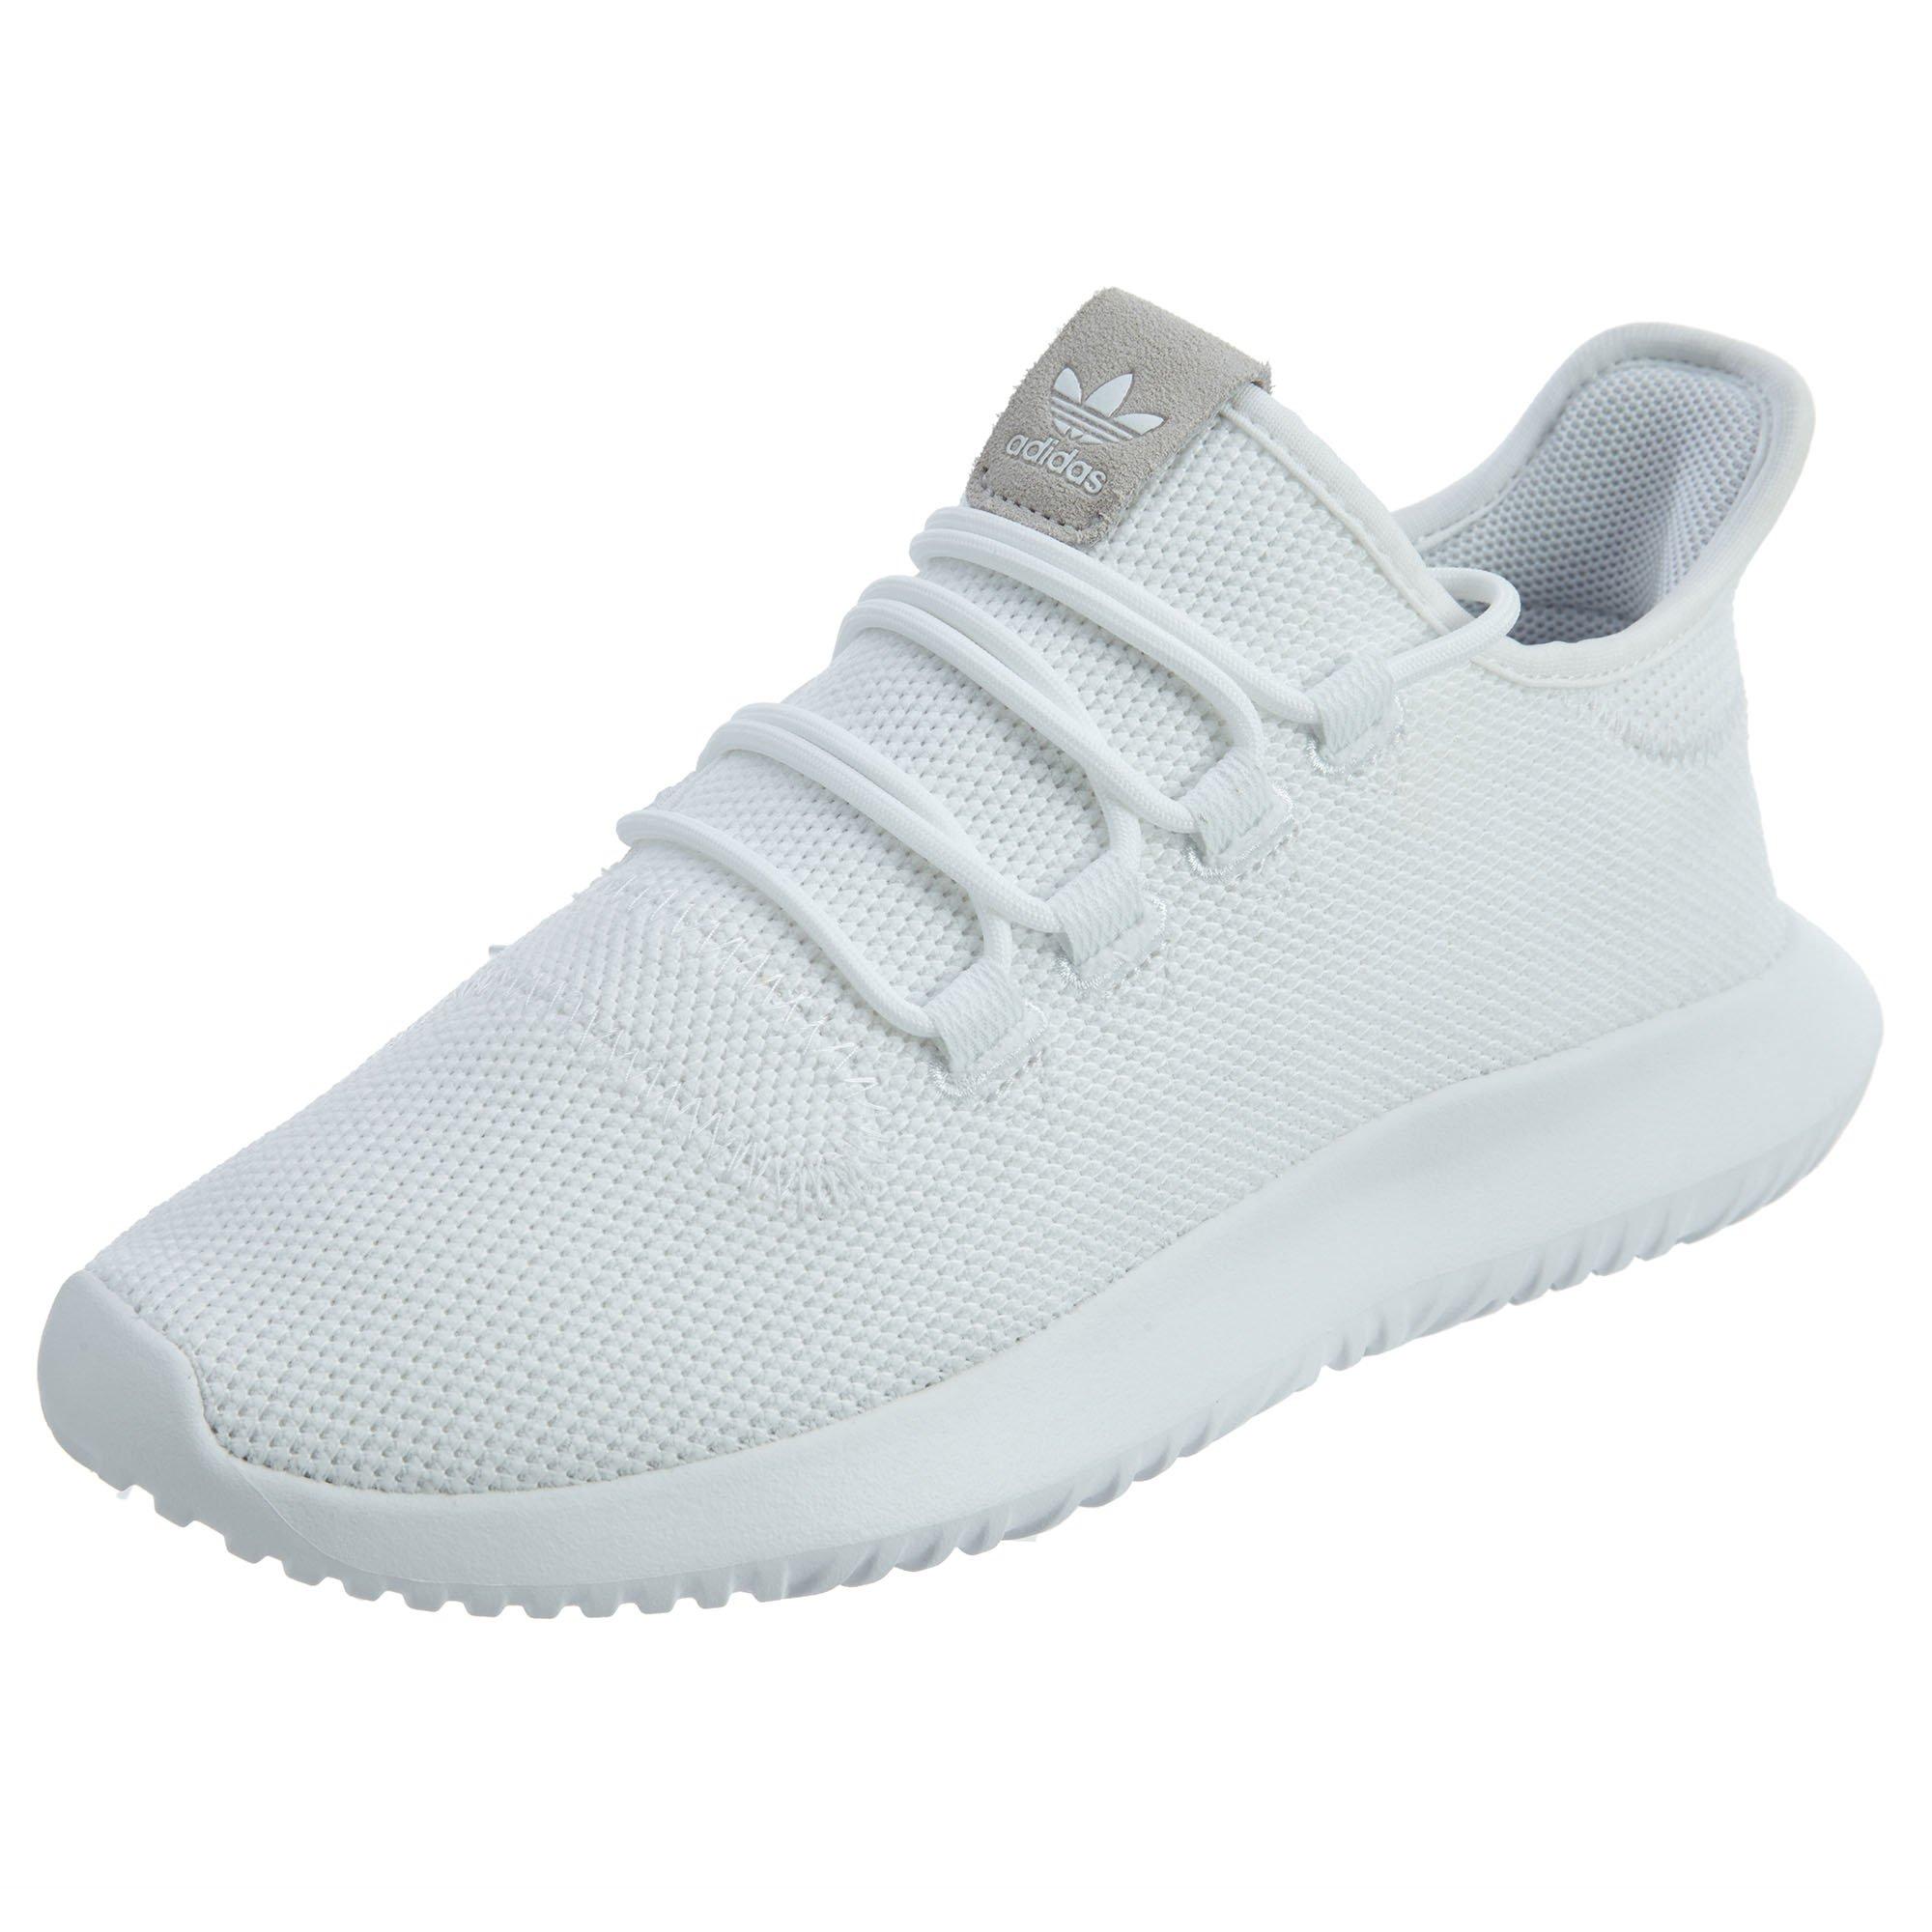 adidas tubular shoes white